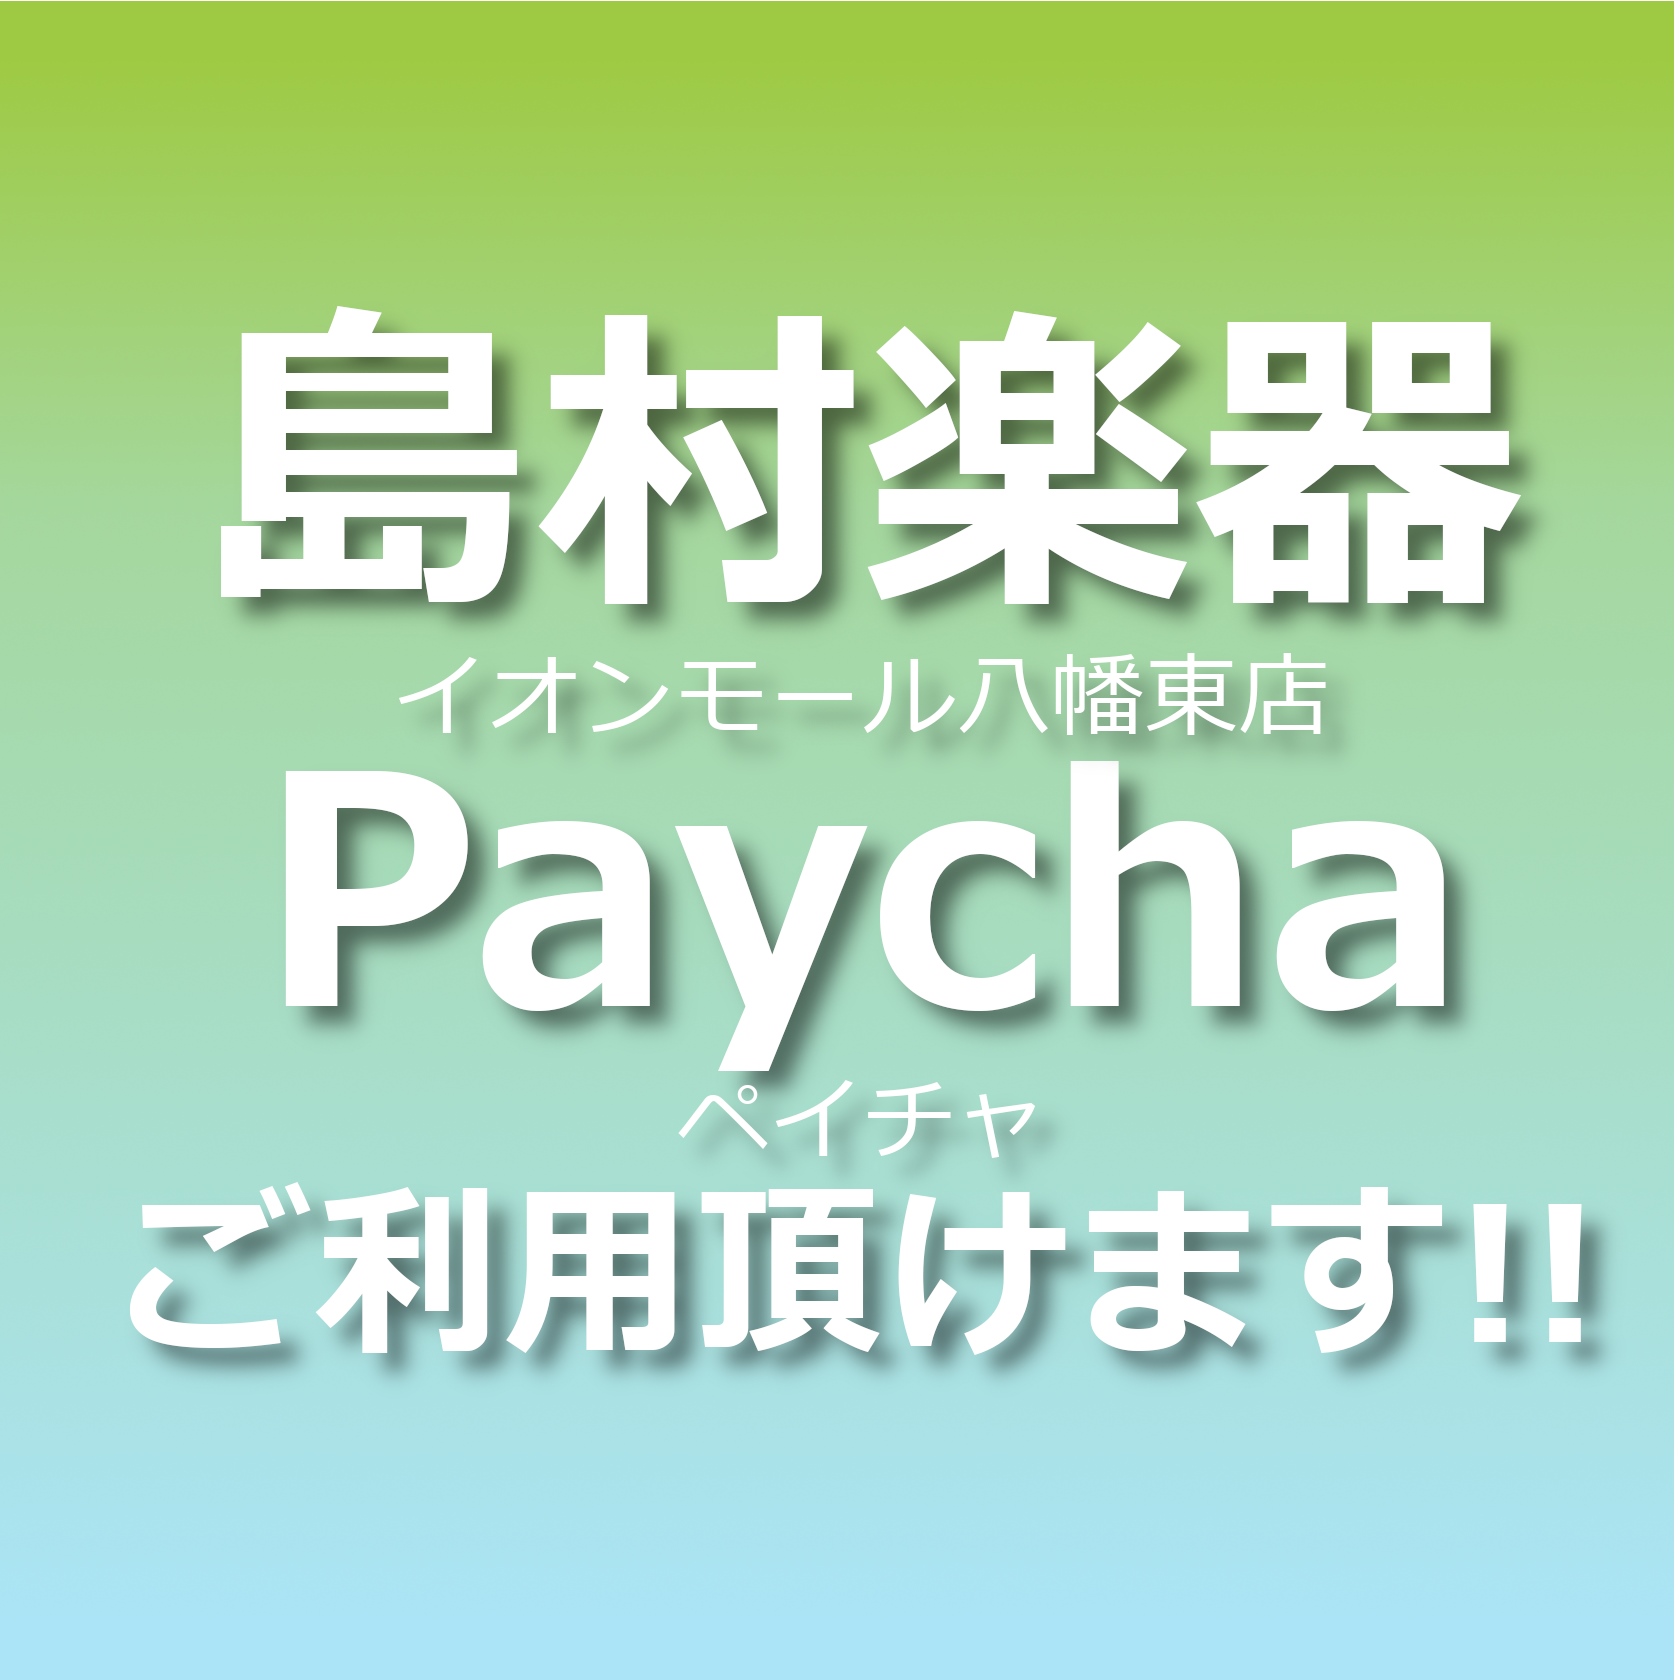 島村楽器小イオンモール八幡東店では北九市内でご利用頂けるキャッシュレス商品券Paychaをご利用頂けます！※島村楽器でPaychaがご利用頂けるのは当店のみとなります(2022年5月現在) CONTENTSPaycha(ペイチャ)とは使用期間Paycha(ペイチャ)とは 北九州市内限定でご利用頂ける […]